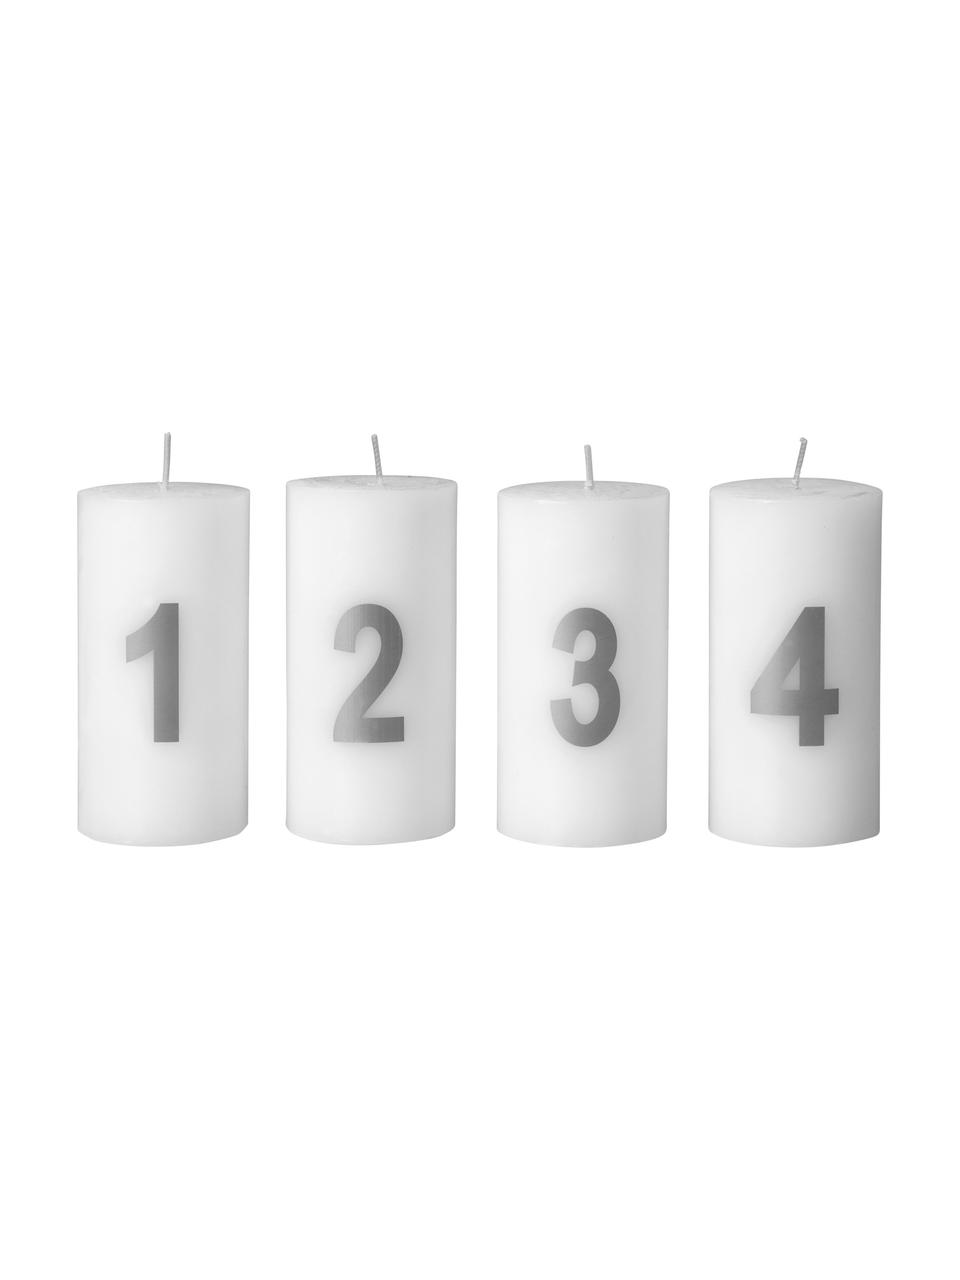 Adventskerzen-Set Avvento, 4-tlg., Paraffinwachs, Weiß, Silberfarben, Ø 5 x H 10 cm